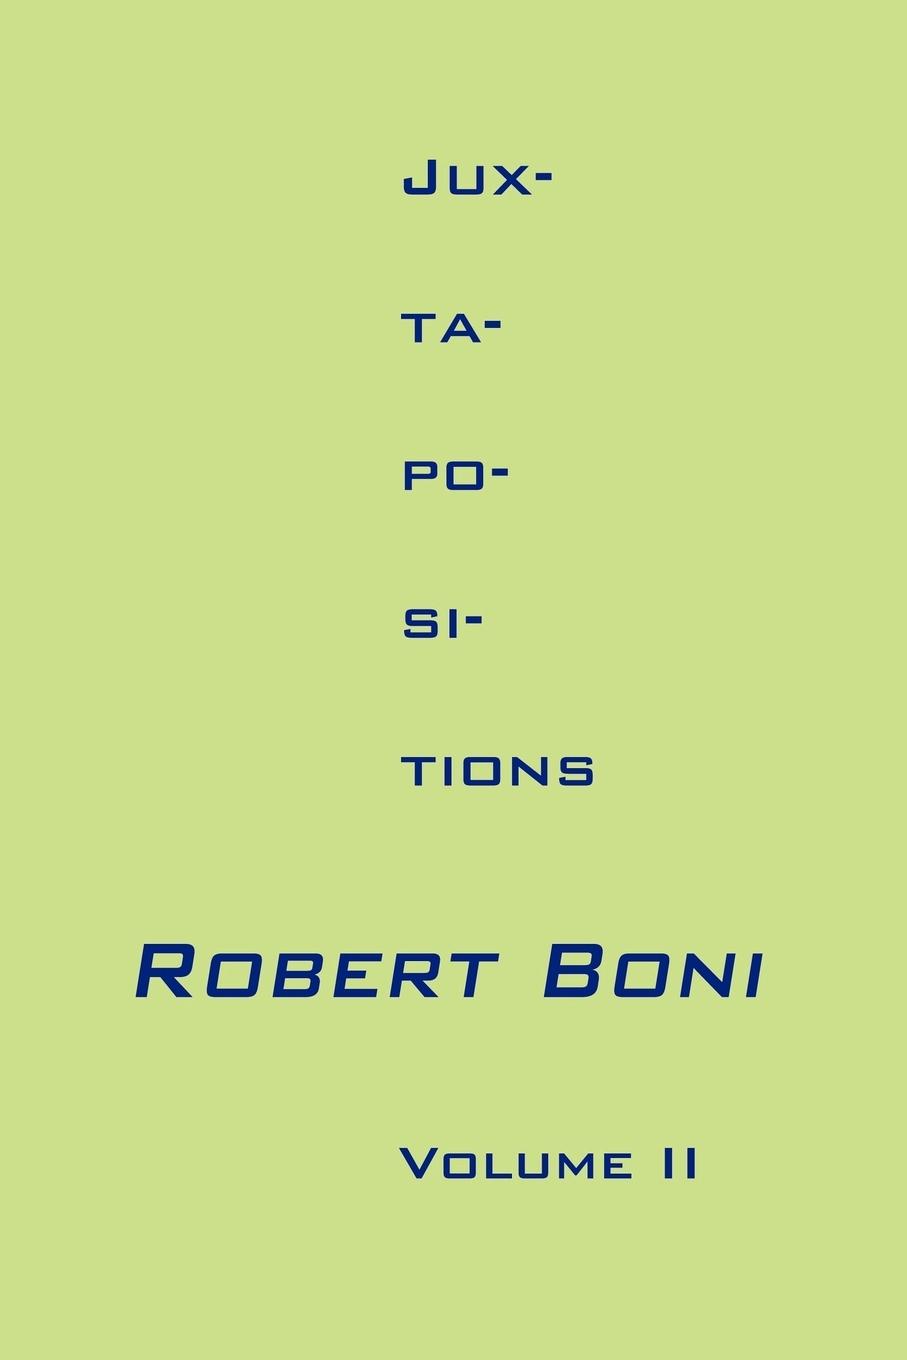 Jux-ta-po-si-tions Volume II - Boni, Robert